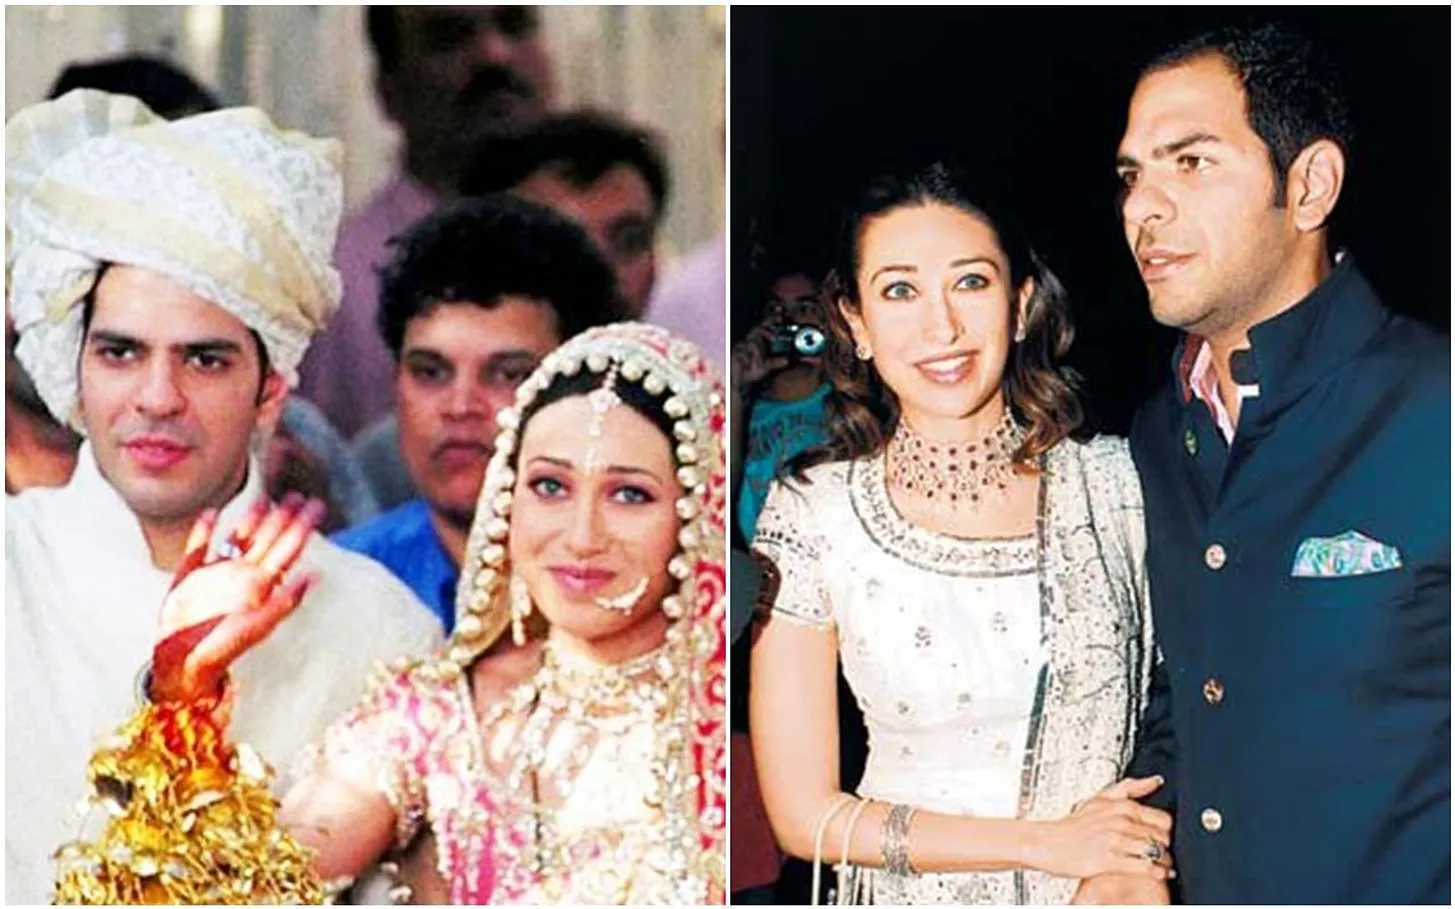 Karisma Kapoor And Sanjay Kapur Wedding Pictures And Divorce -  Entertainment News: Amar Ujala - धूमधाम से हुई थी करिश्मा कपूर की शादी, पति  ने हनीमून पर लगाई बोली, टॉर्चर के बाद